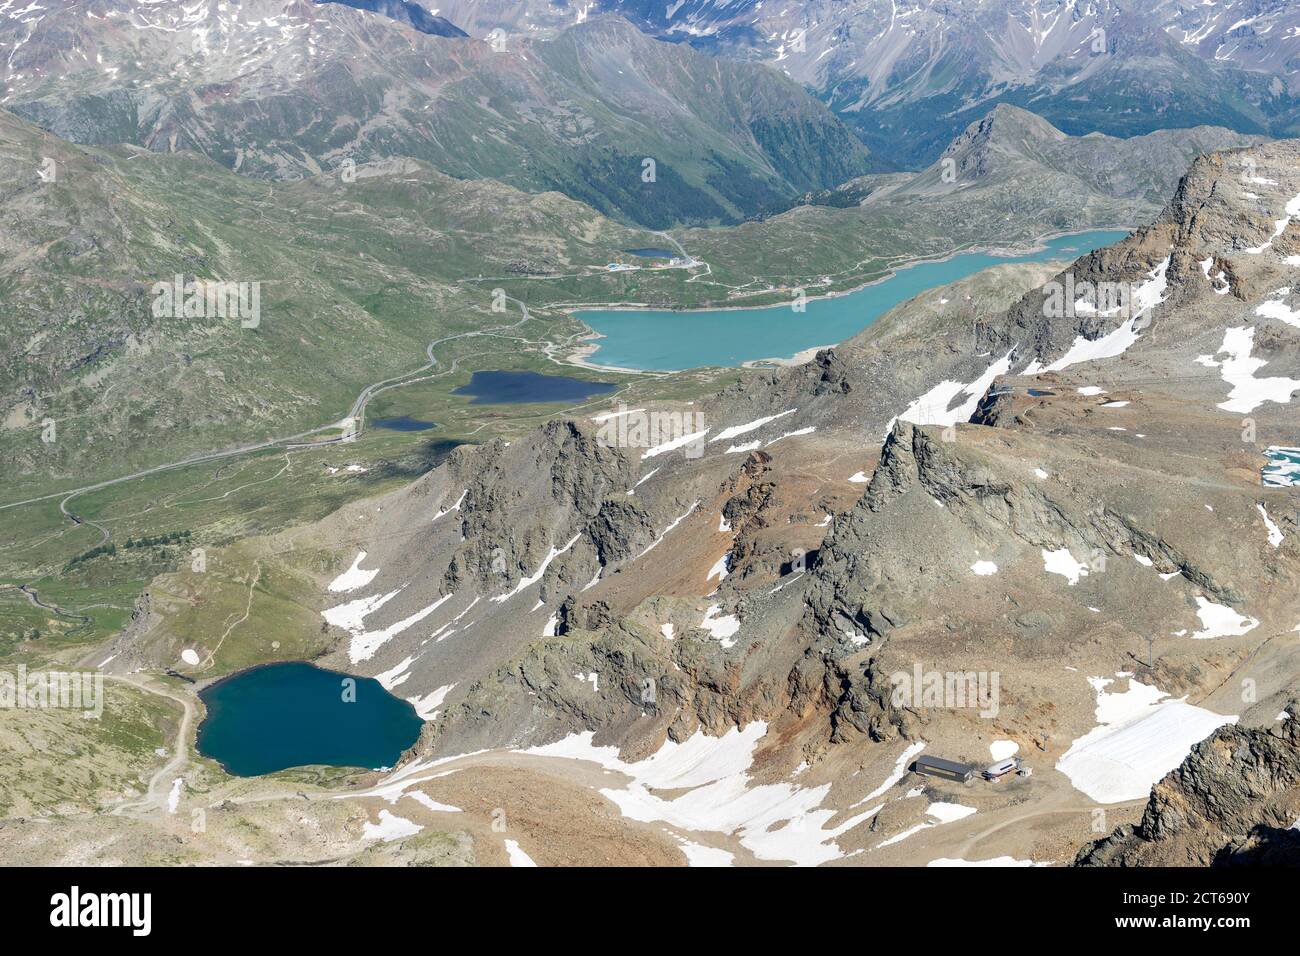 Der Berninapass mit dem hellen Lago Bianco, links davon der dunkle Lej Nair. Vorne der Lej da Diavolezza. Sicht vom Munt Pers. Stock Photo